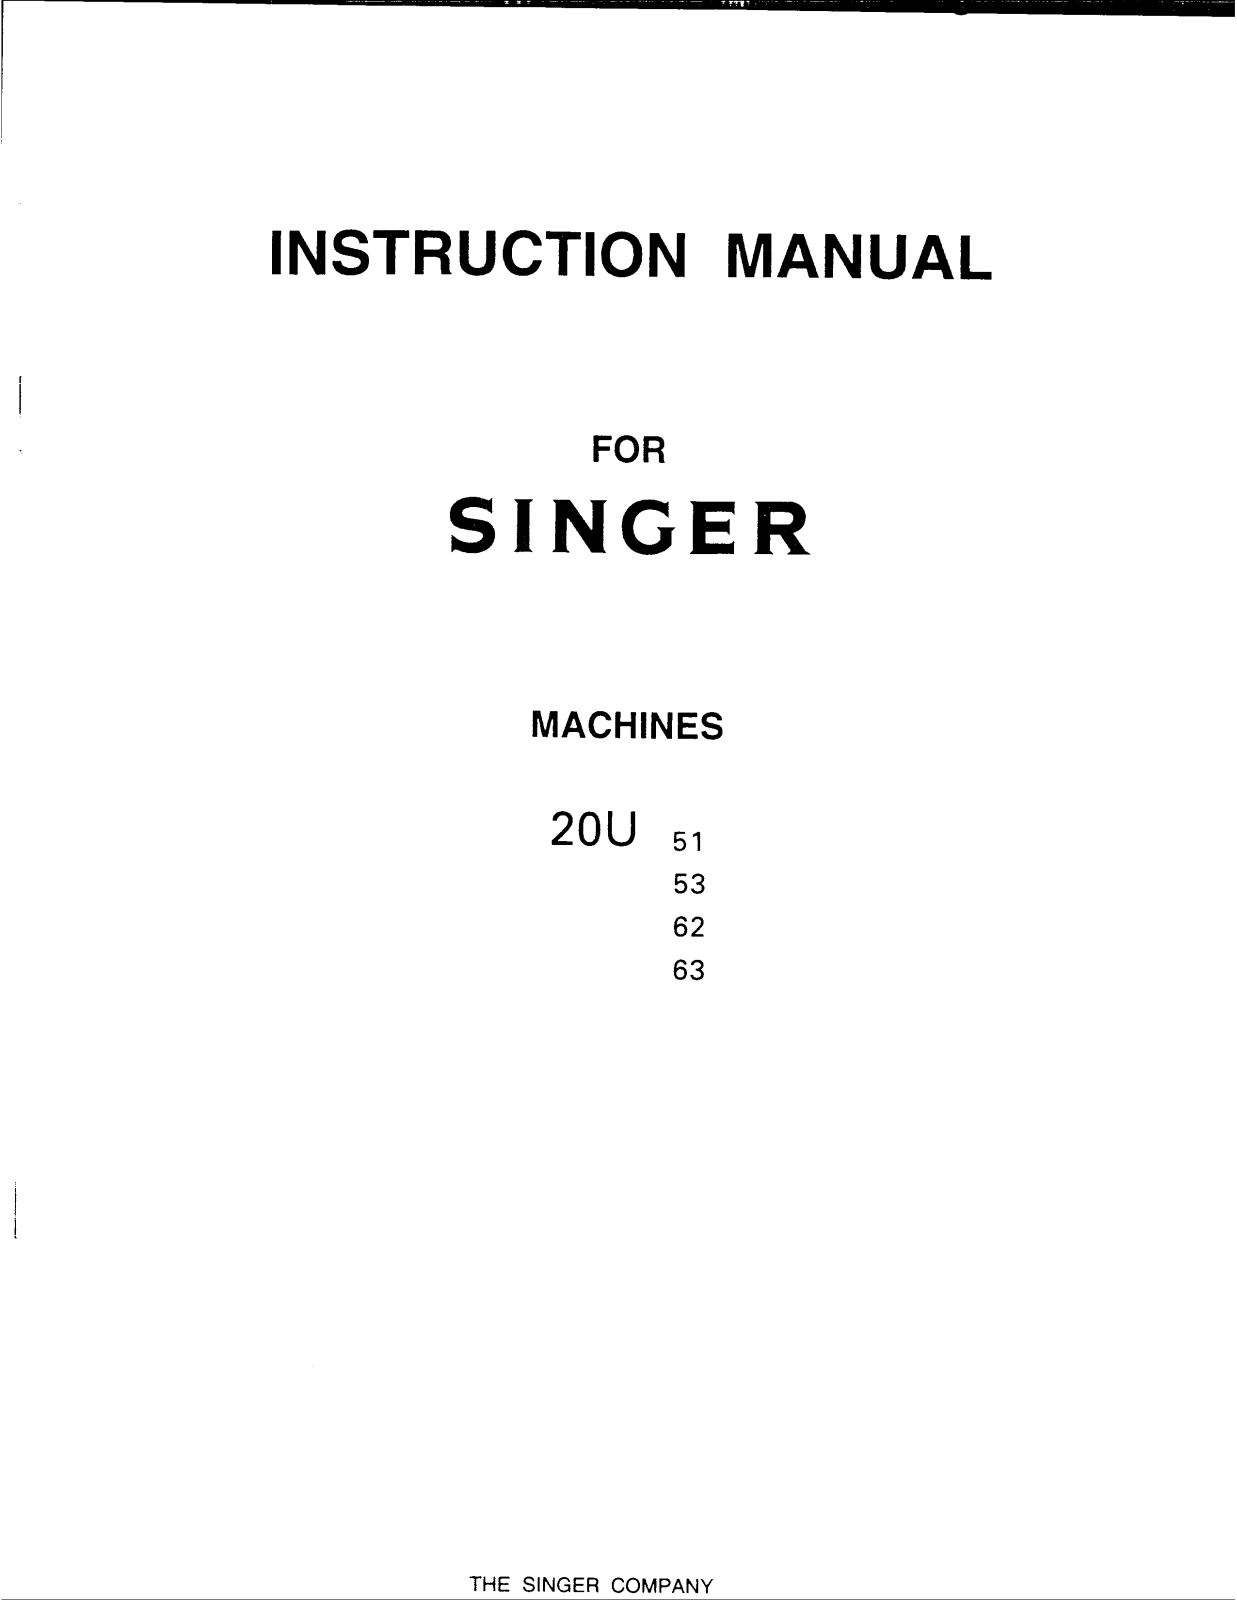 Singer 20U63, 20U62, 20U53, 20U51 User Manual